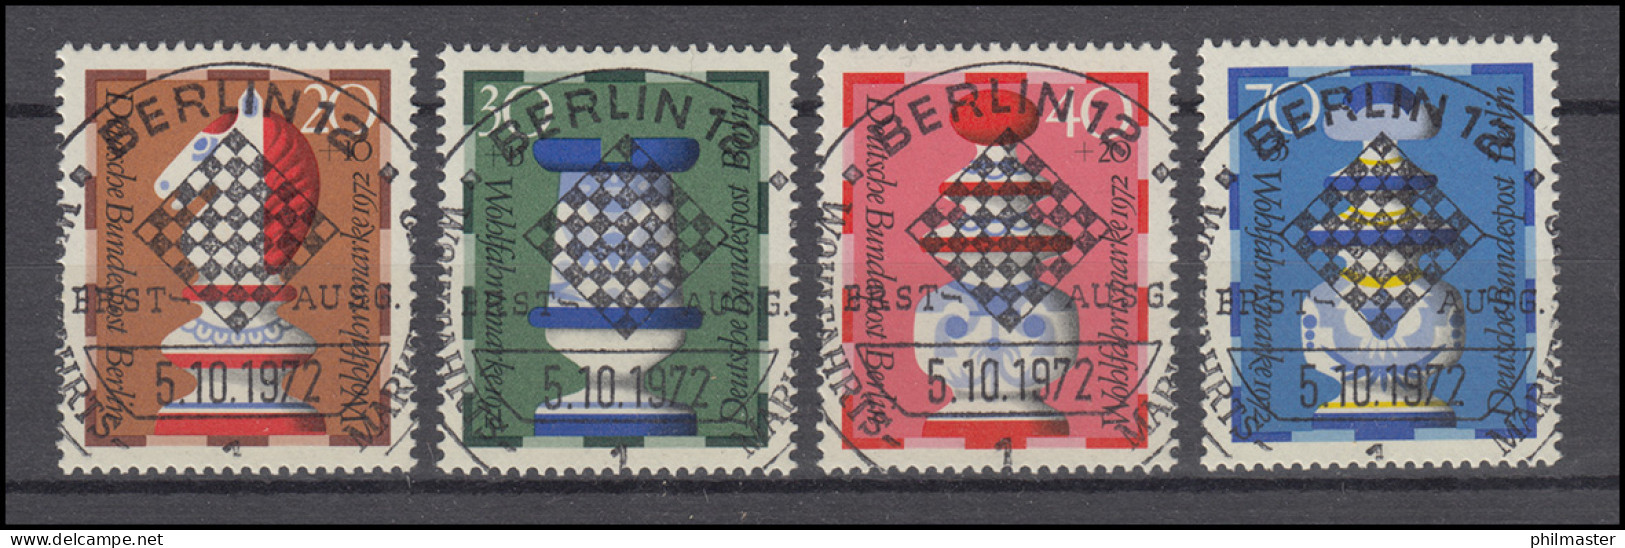 435-438 Wofa Schachfiguren 1972 - Satz Mit Vollstempel ESSt BERLIN 5.10.72 - Used Stamps